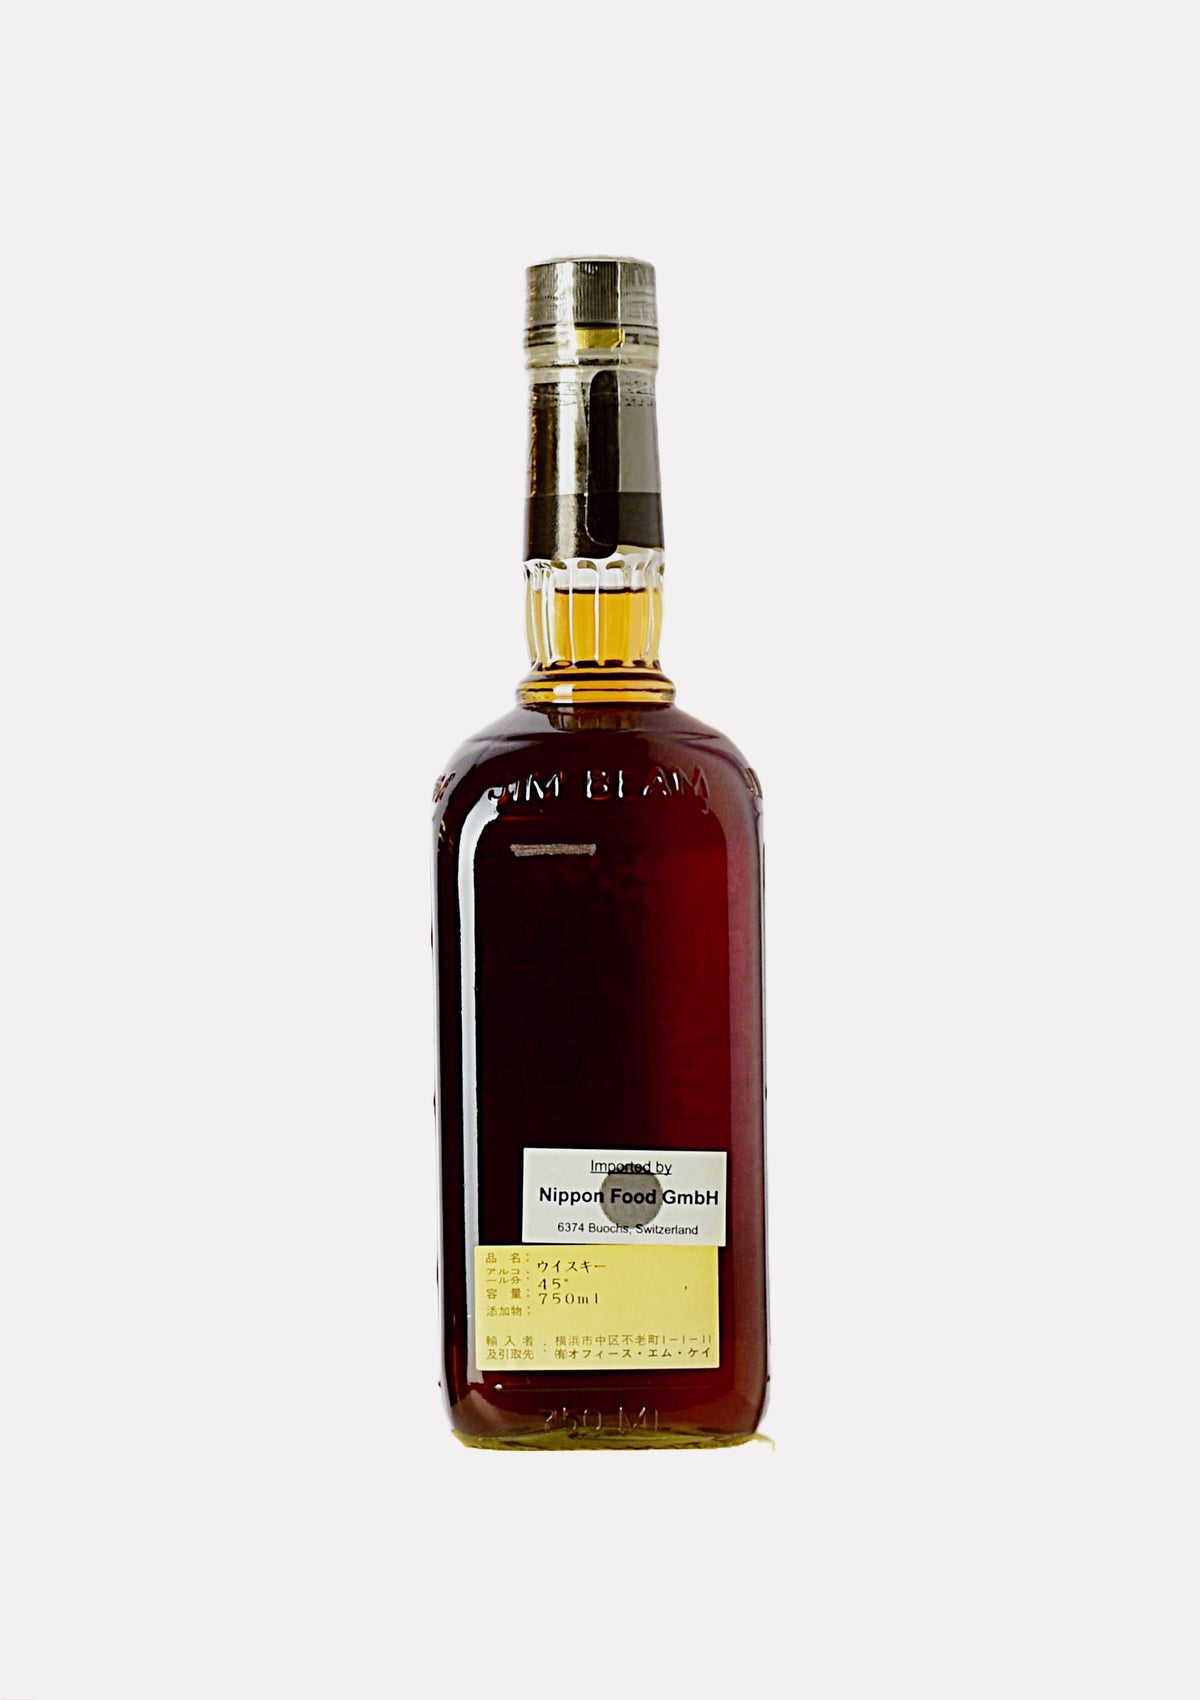 Jim Beam Kentucky Straight Bourbon Whiskey 8 Jahre